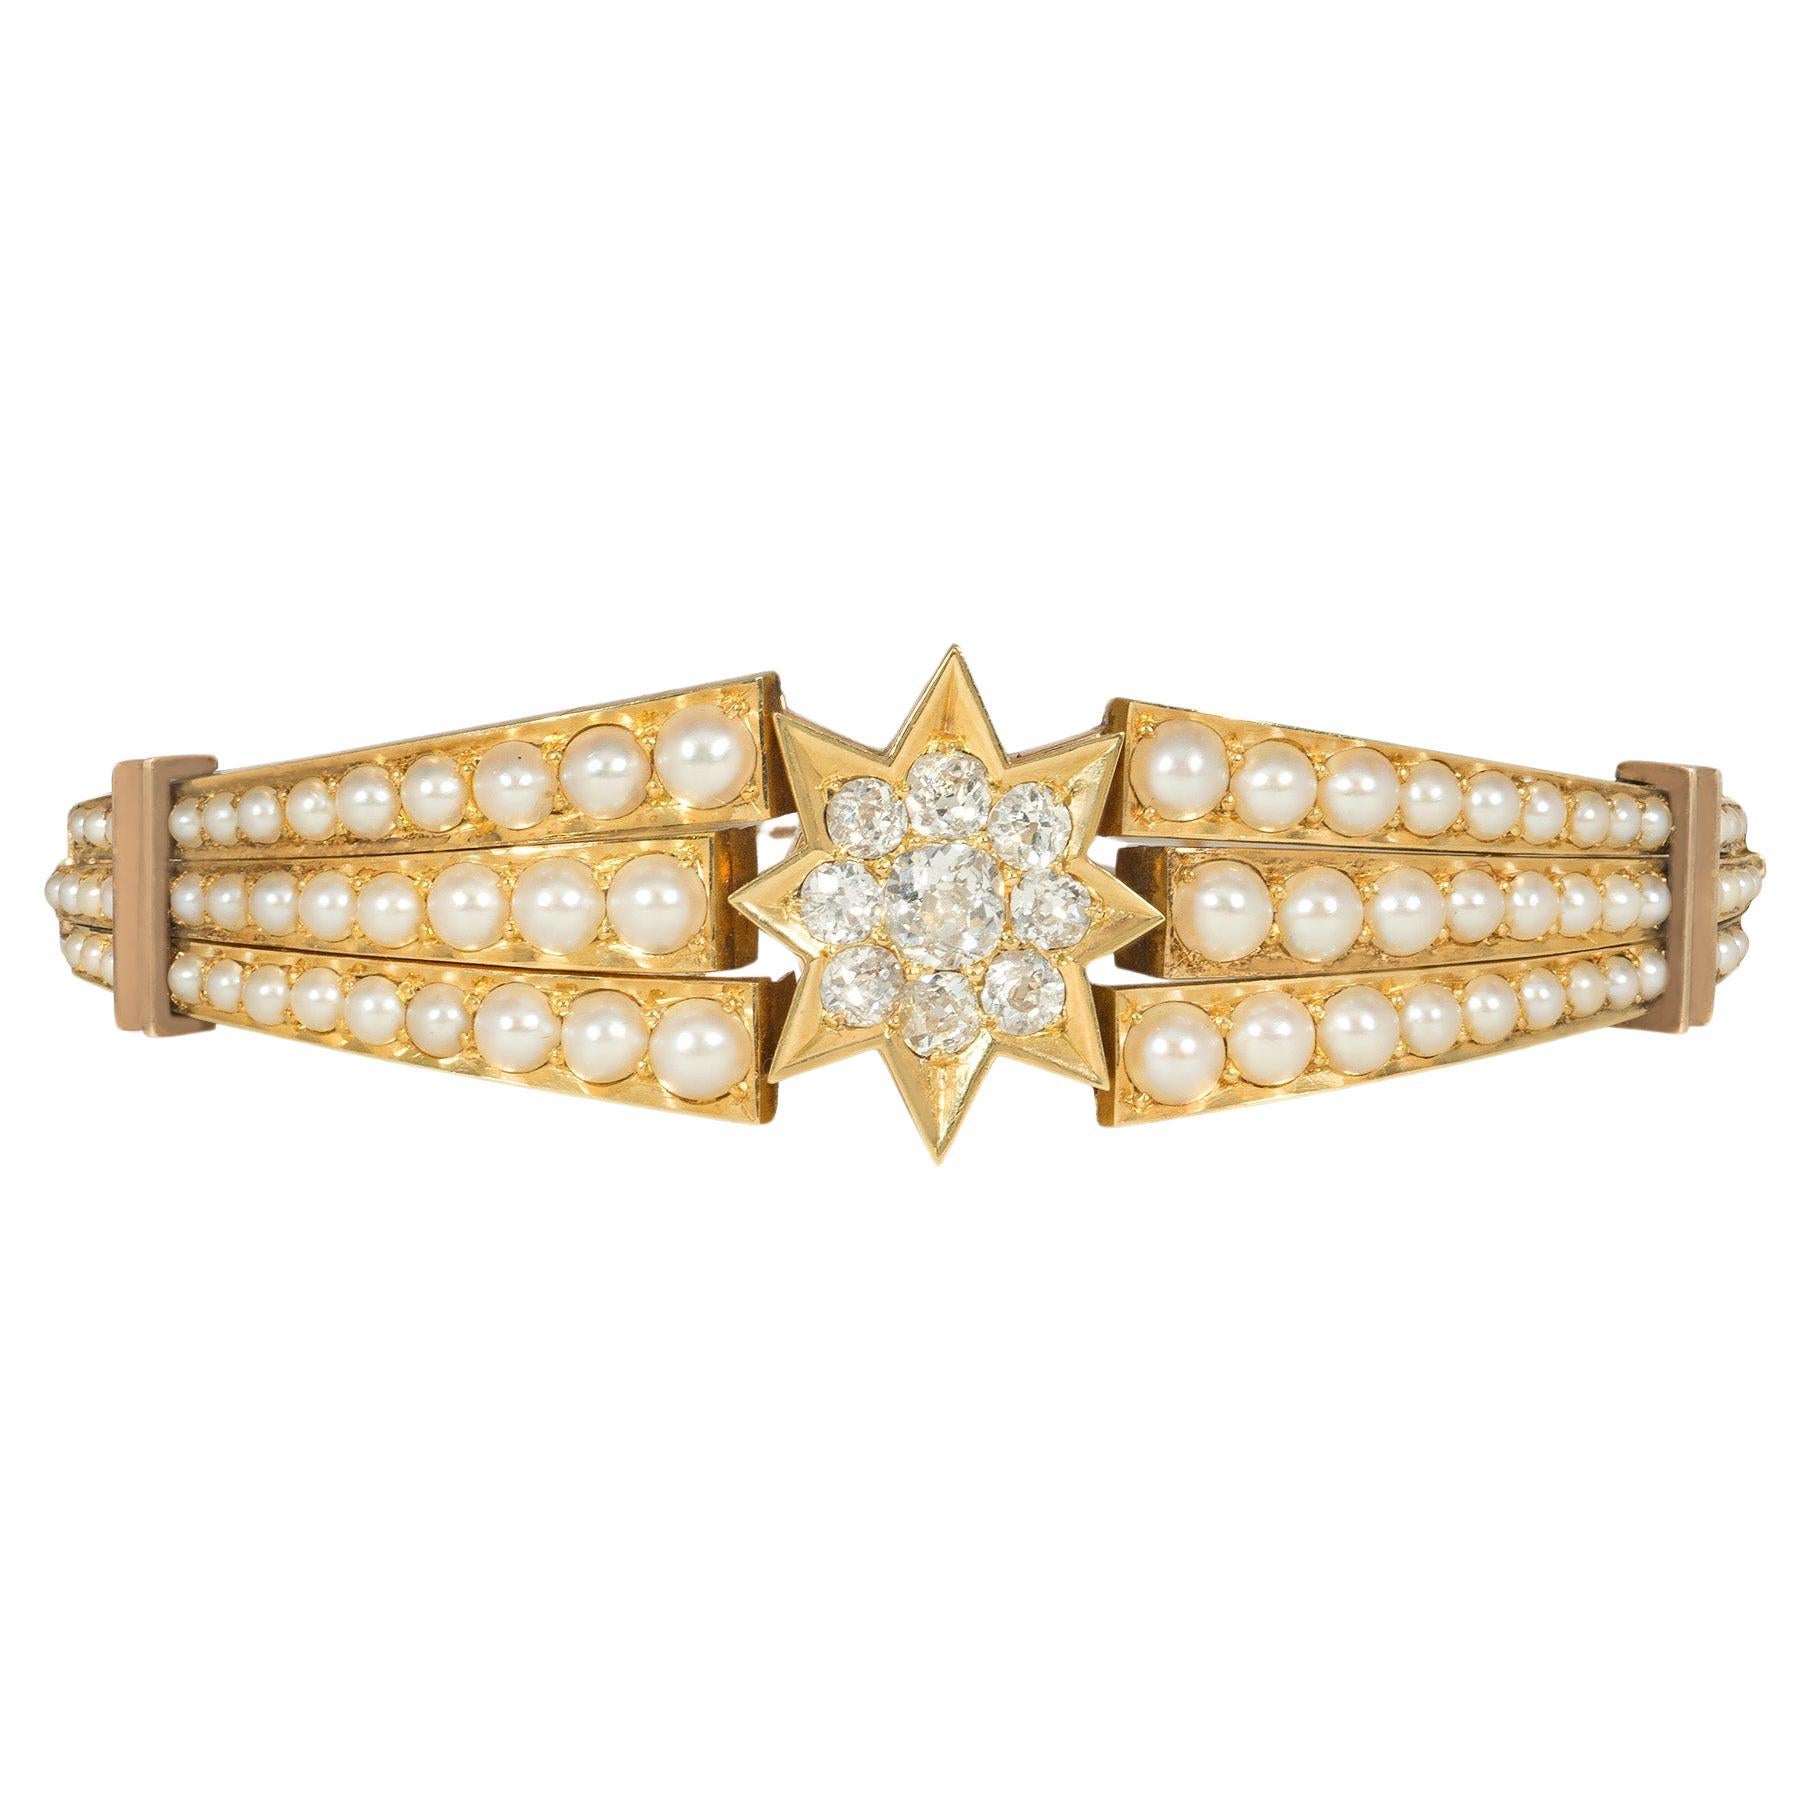 Antikes viktorianisches Armband aus Gold, Diamanten und Perlen mit Schaukelstern-Motiv